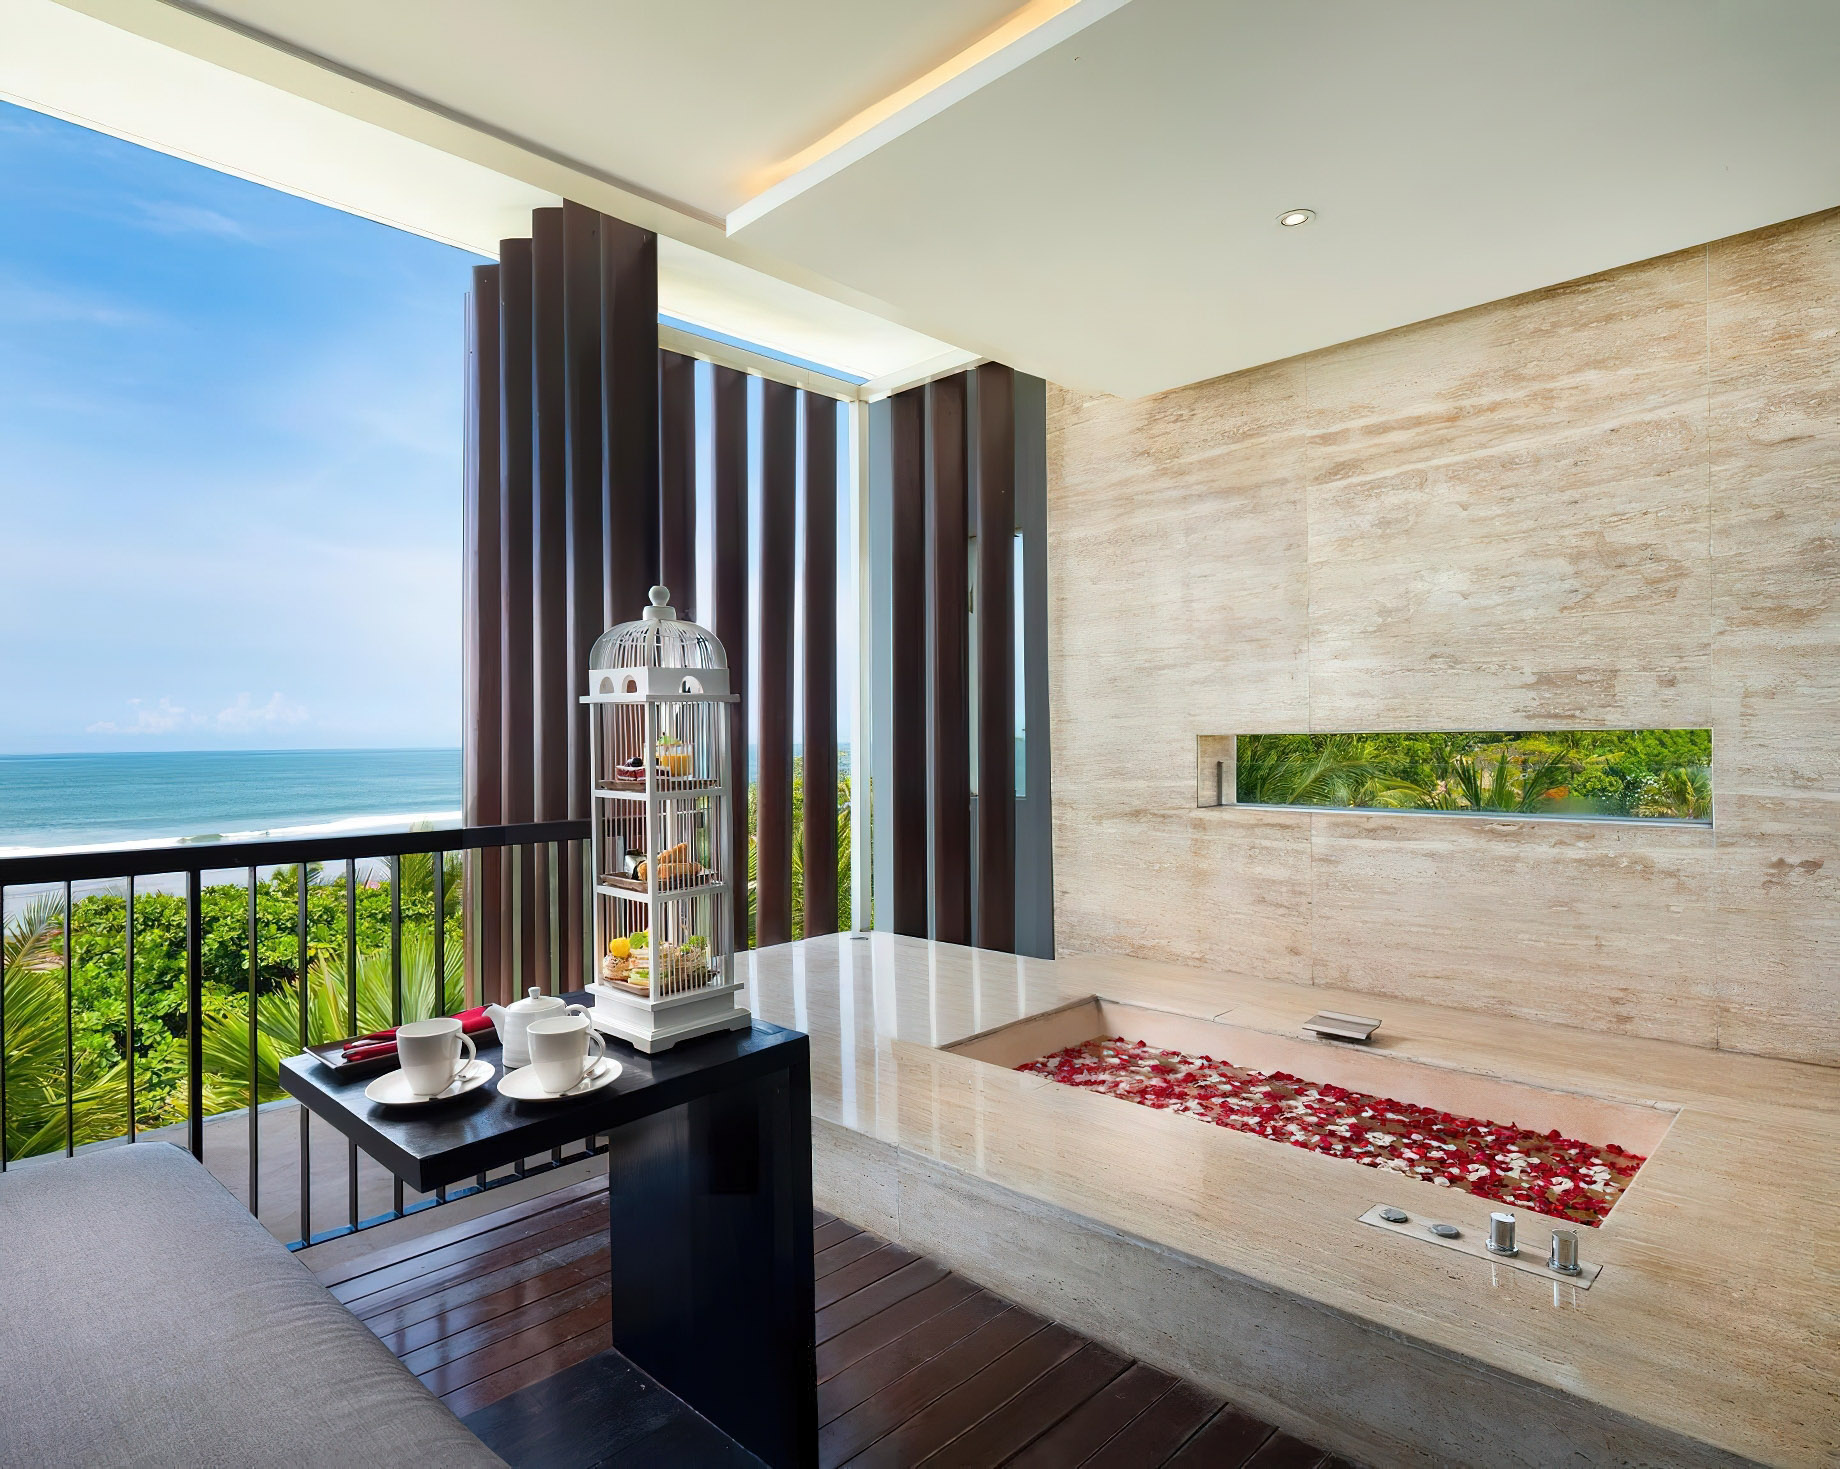 Anantara Seminyak Bali Resort – Bali, Indonesia – Ocean Suite Terrace